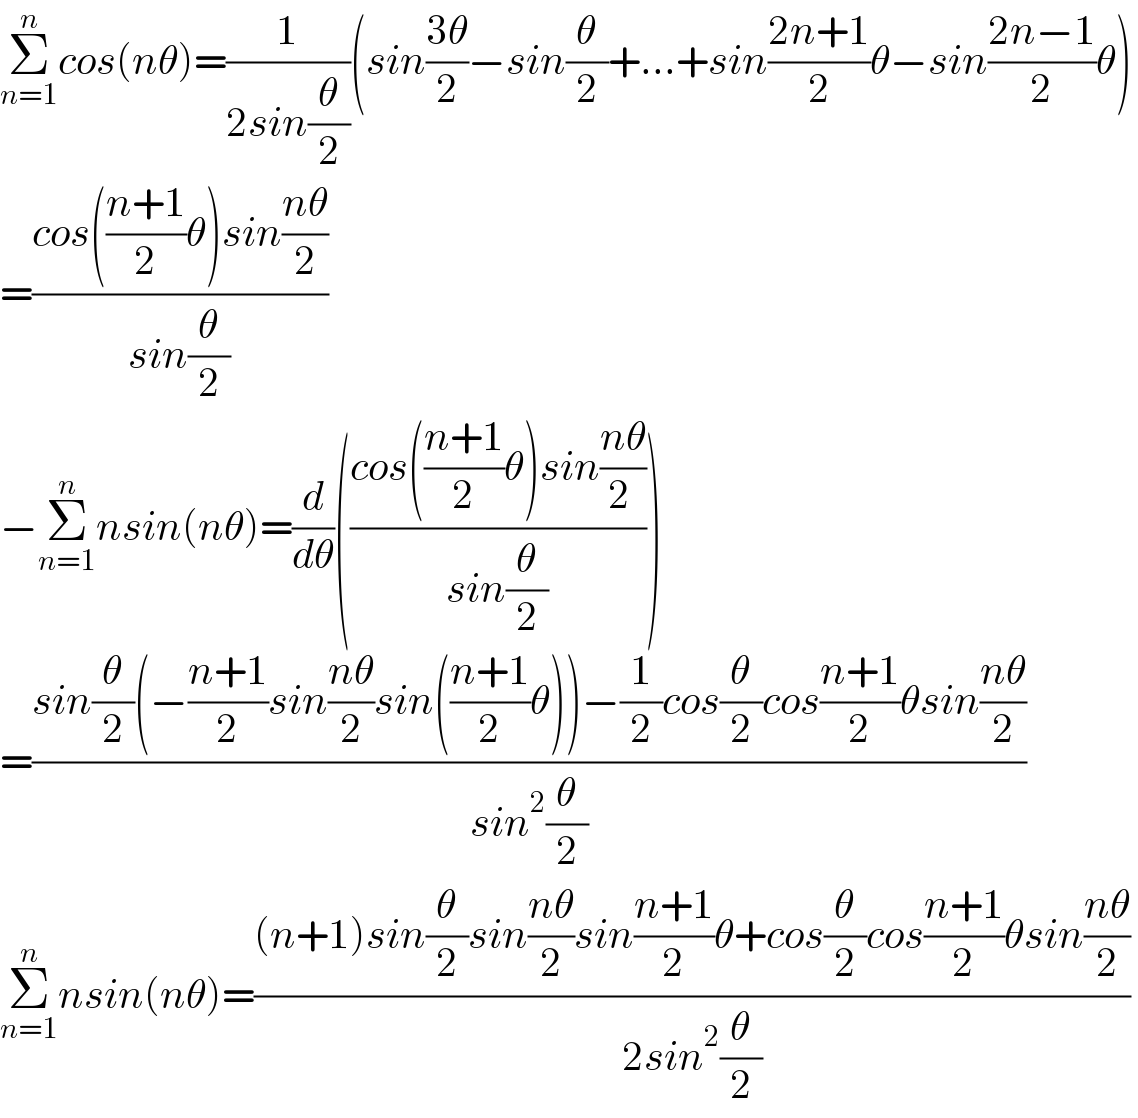 Σ_(n=1) ^n cos(nθ)=(1/(2sin(θ/2)))(sin((3θ)/2)−sin(θ/2)+...+sin((2n+1)/2)θ−sin((2n−1)/2)θ)  =((cos(((n+1)/2)θ)sin((nθ)/2))/(sin(θ/2)))  −Σ_(n=1) ^n nsin(nθ)=(d/dθ)(((cos(((n+1)/2)θ)sin((nθ)/(2 )))/(sin(θ/2))))  =((sin(θ/2)(−((n+1)/2)sin((nθ)/2)sin(((n+1)/2)θ))−(1/2)cos(θ/2)cos((n+1)/2)θsin((nθ)/2))/(sin^2 (θ/2)))   Σ_(n=1) ^n nsin(nθ)=(((n+1)sin(θ/2)sin((nθ)/2)sin((n+1)/2)θ+cos(θ/2)cos((n+1)/2)θsin((nθ)/2))/(2sin^2 (θ/2)))   